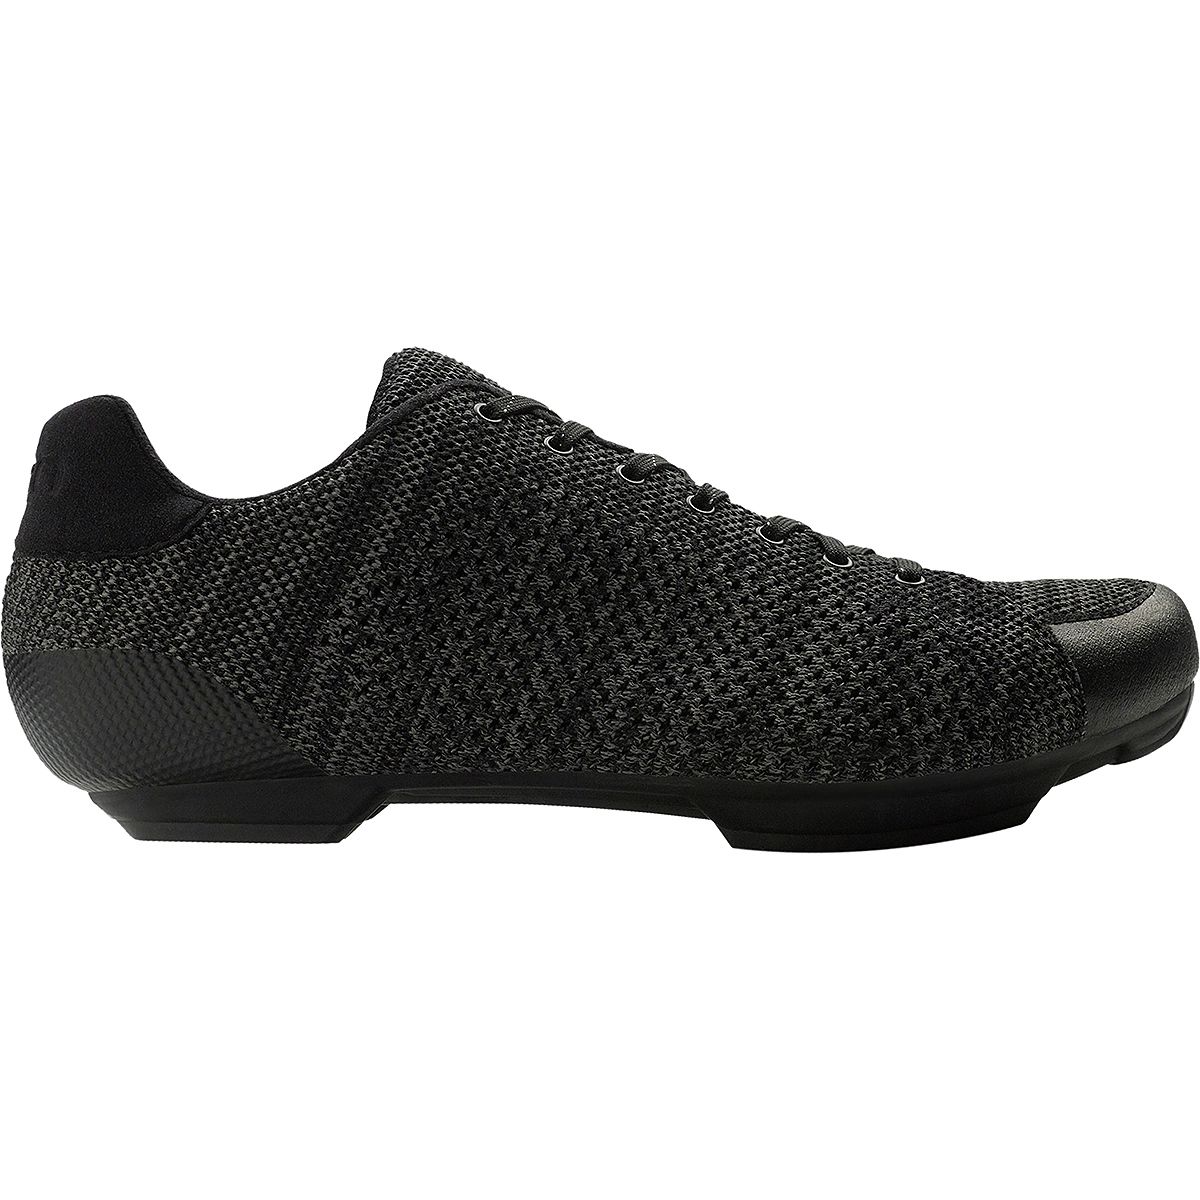 Giro Republic R Knit Cycling Shoe - Men's Black/Charcoal Heather, 40.0